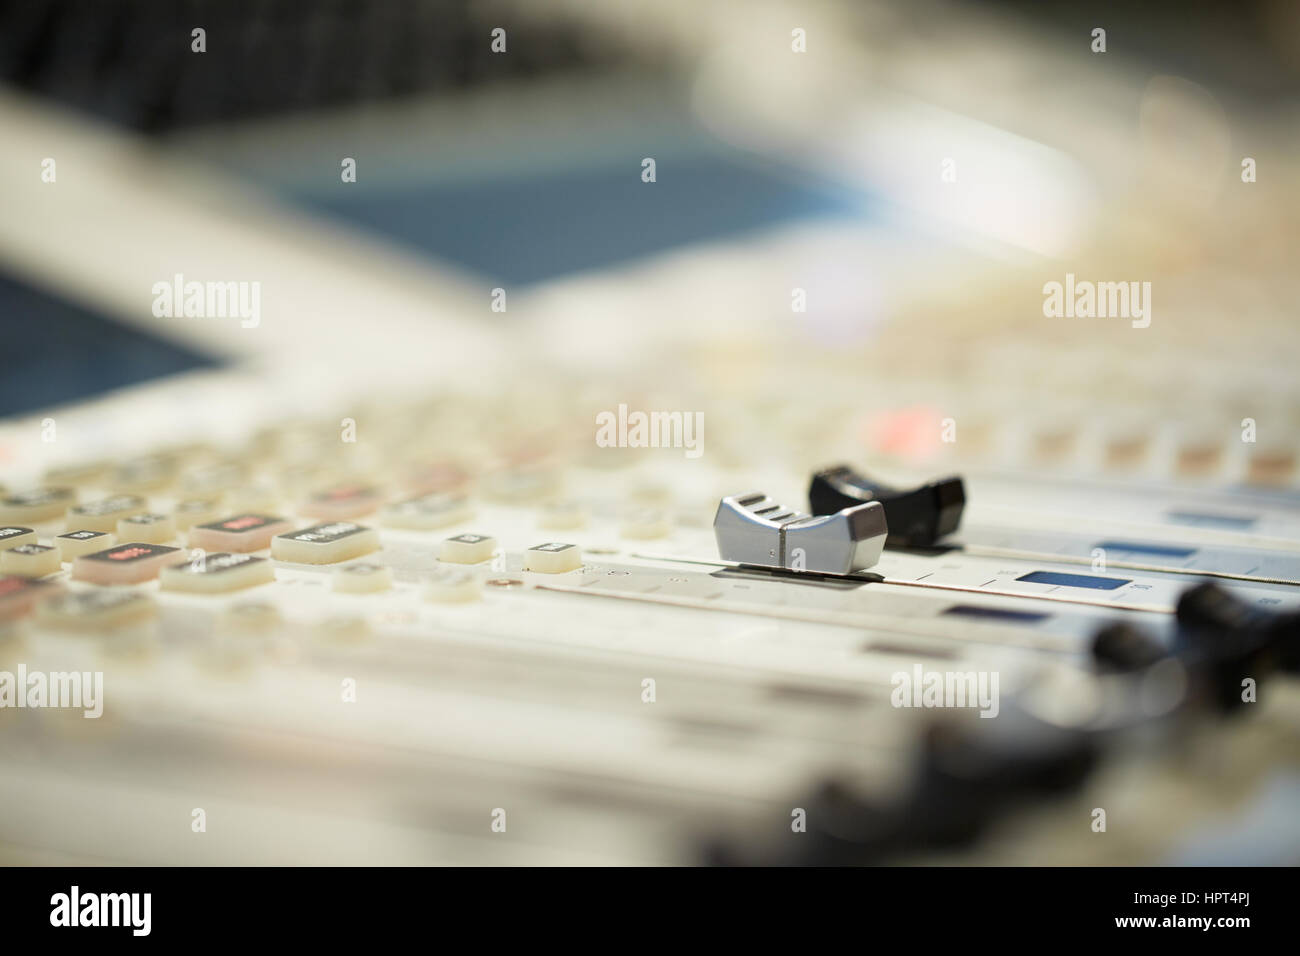 Console de mixage audio professionnel avec les curseurs et boutons de réglage - radio / TV Broadcasting Banque D'Images